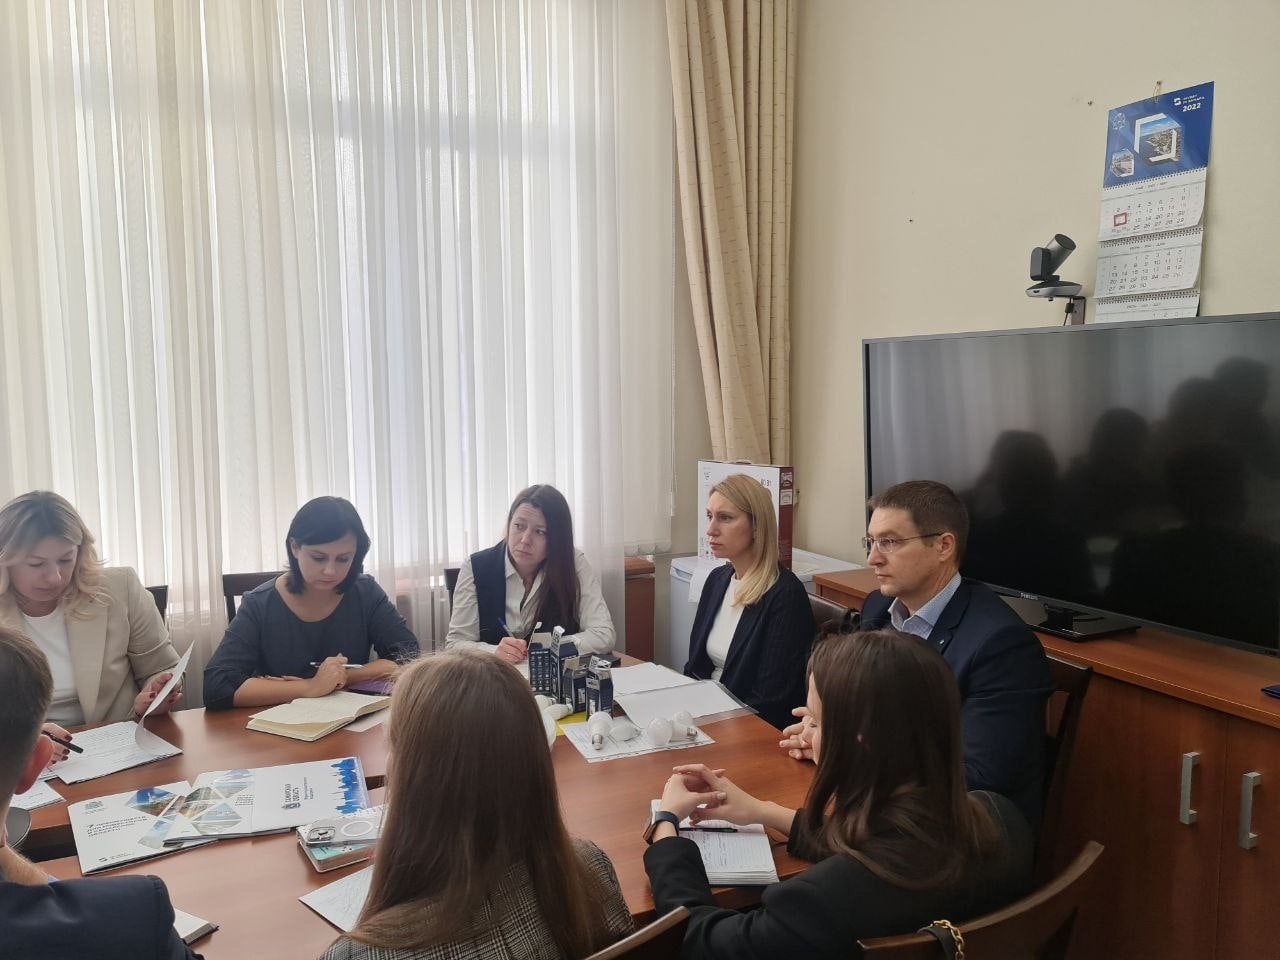 Самарские делороссы обсуждают инвестиционные проекты в области радиоэлектроники